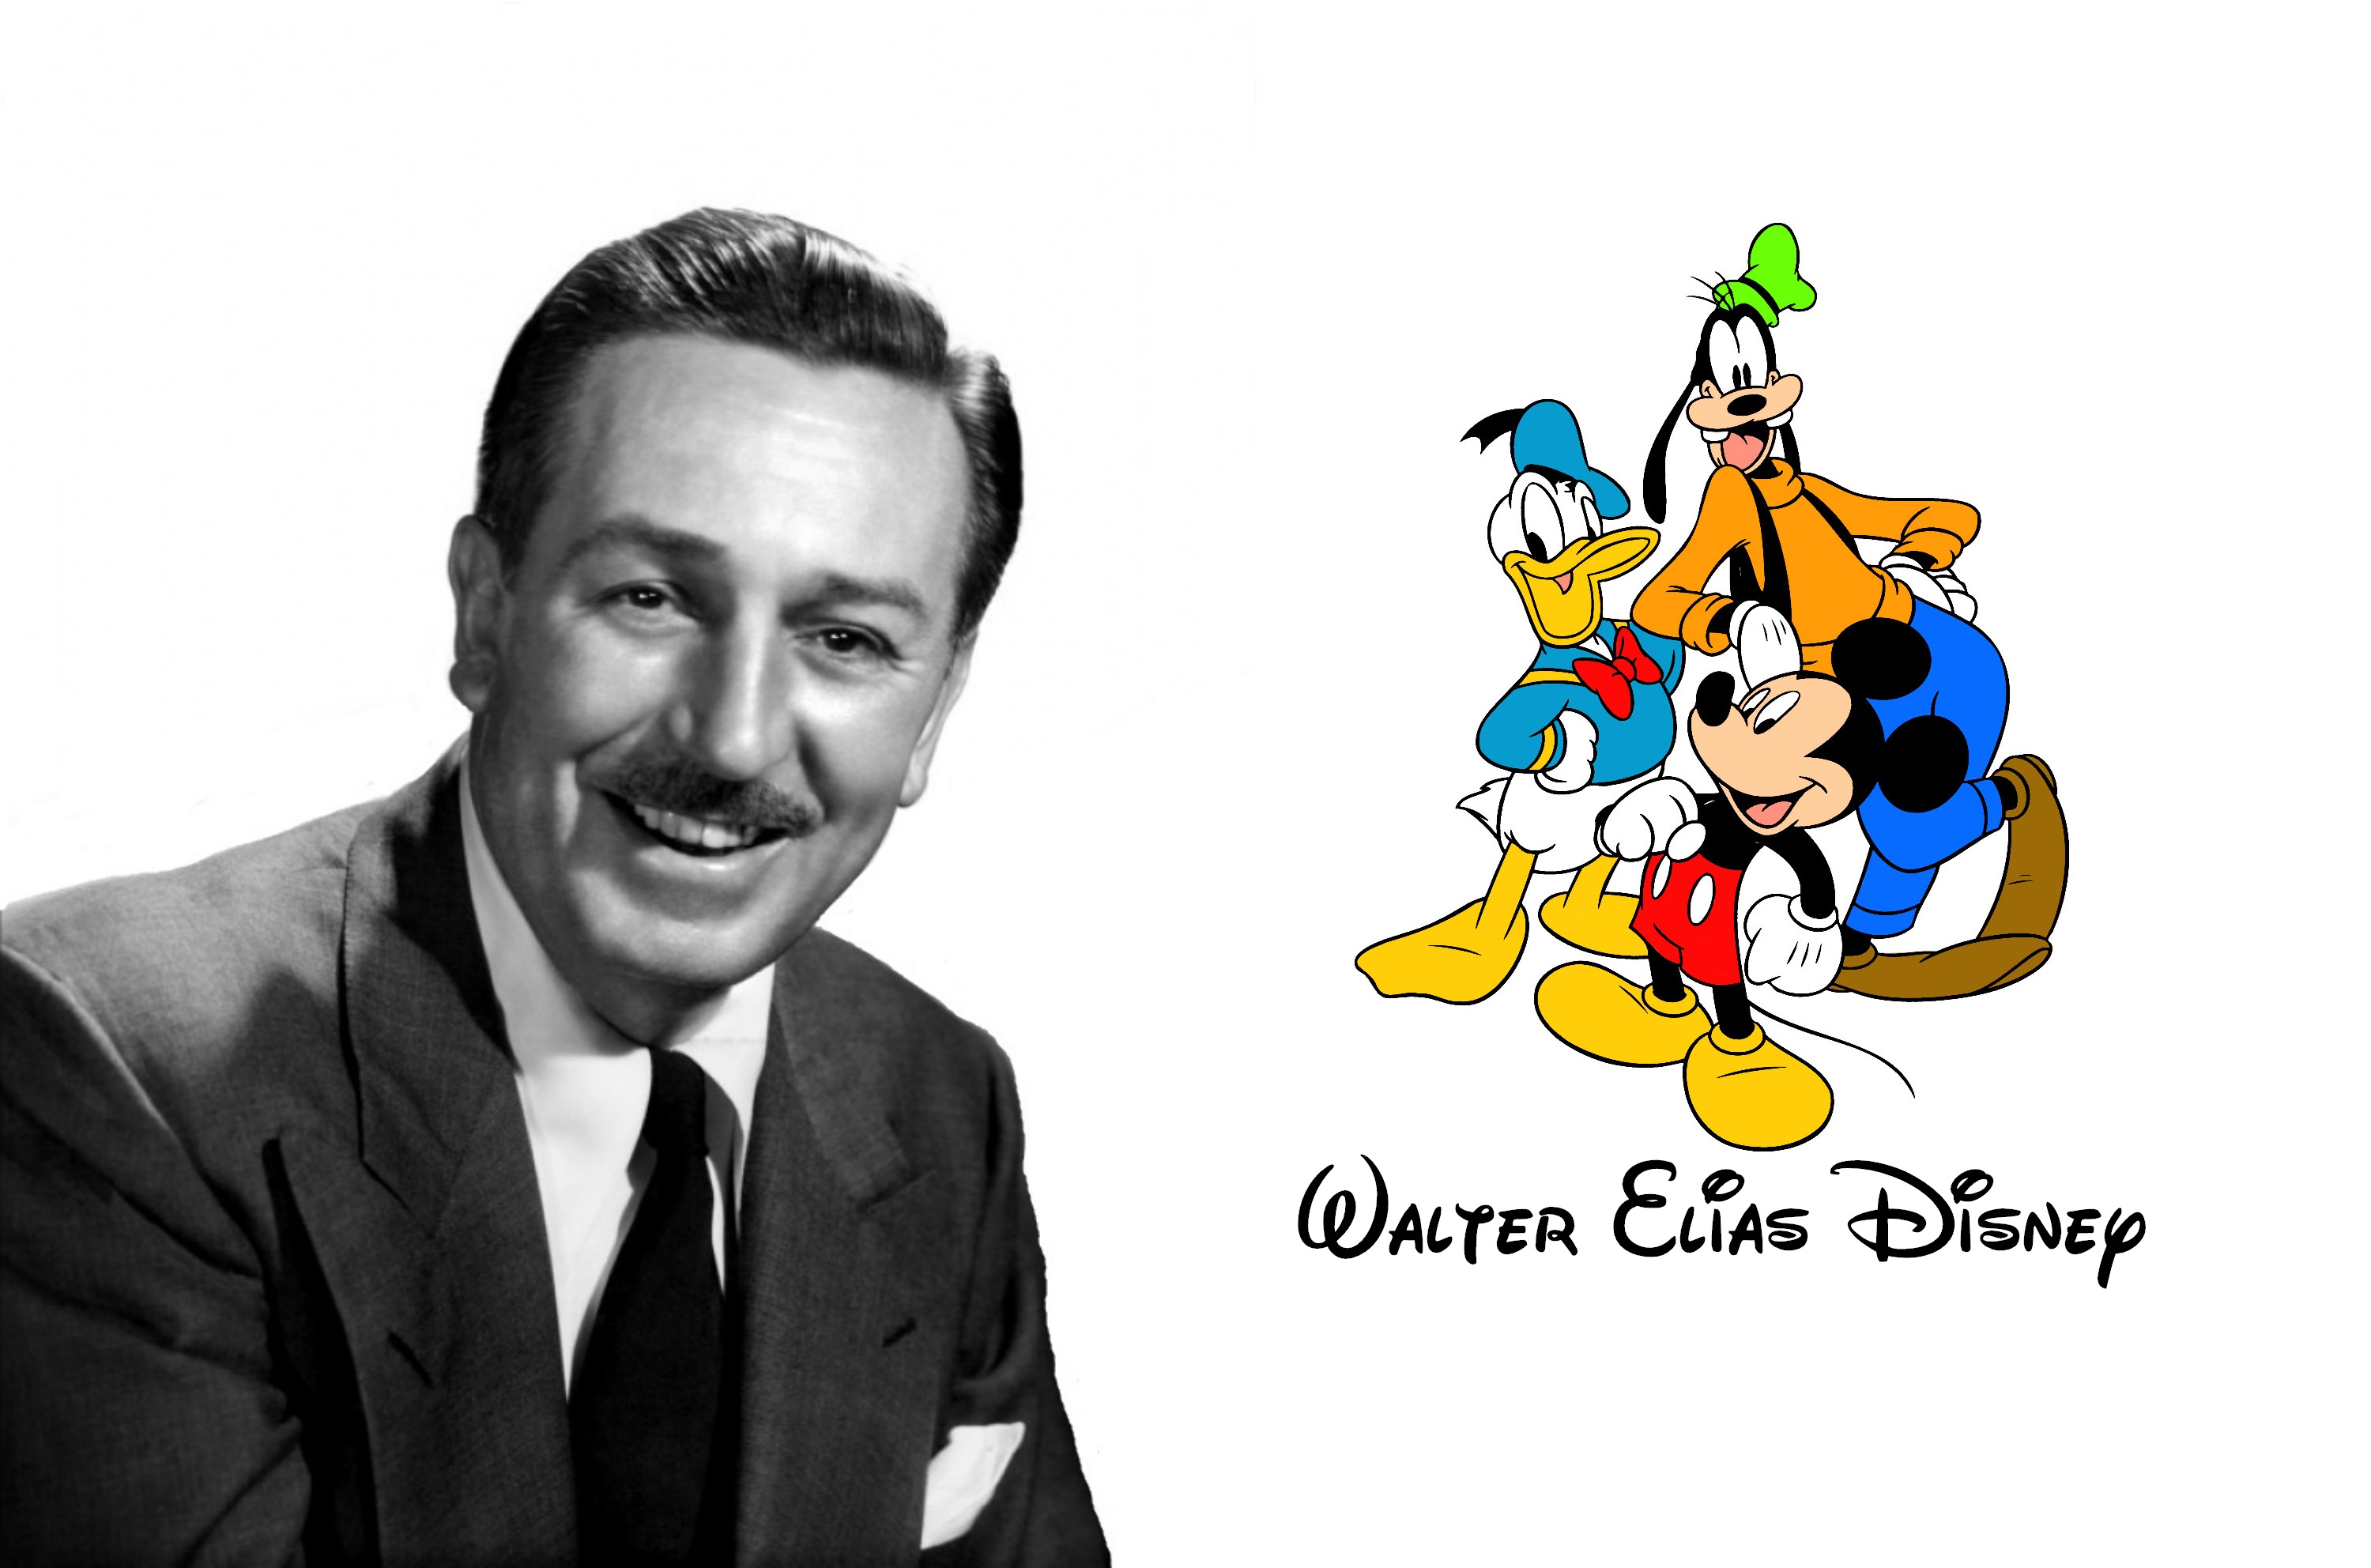 Walter Elias Disney